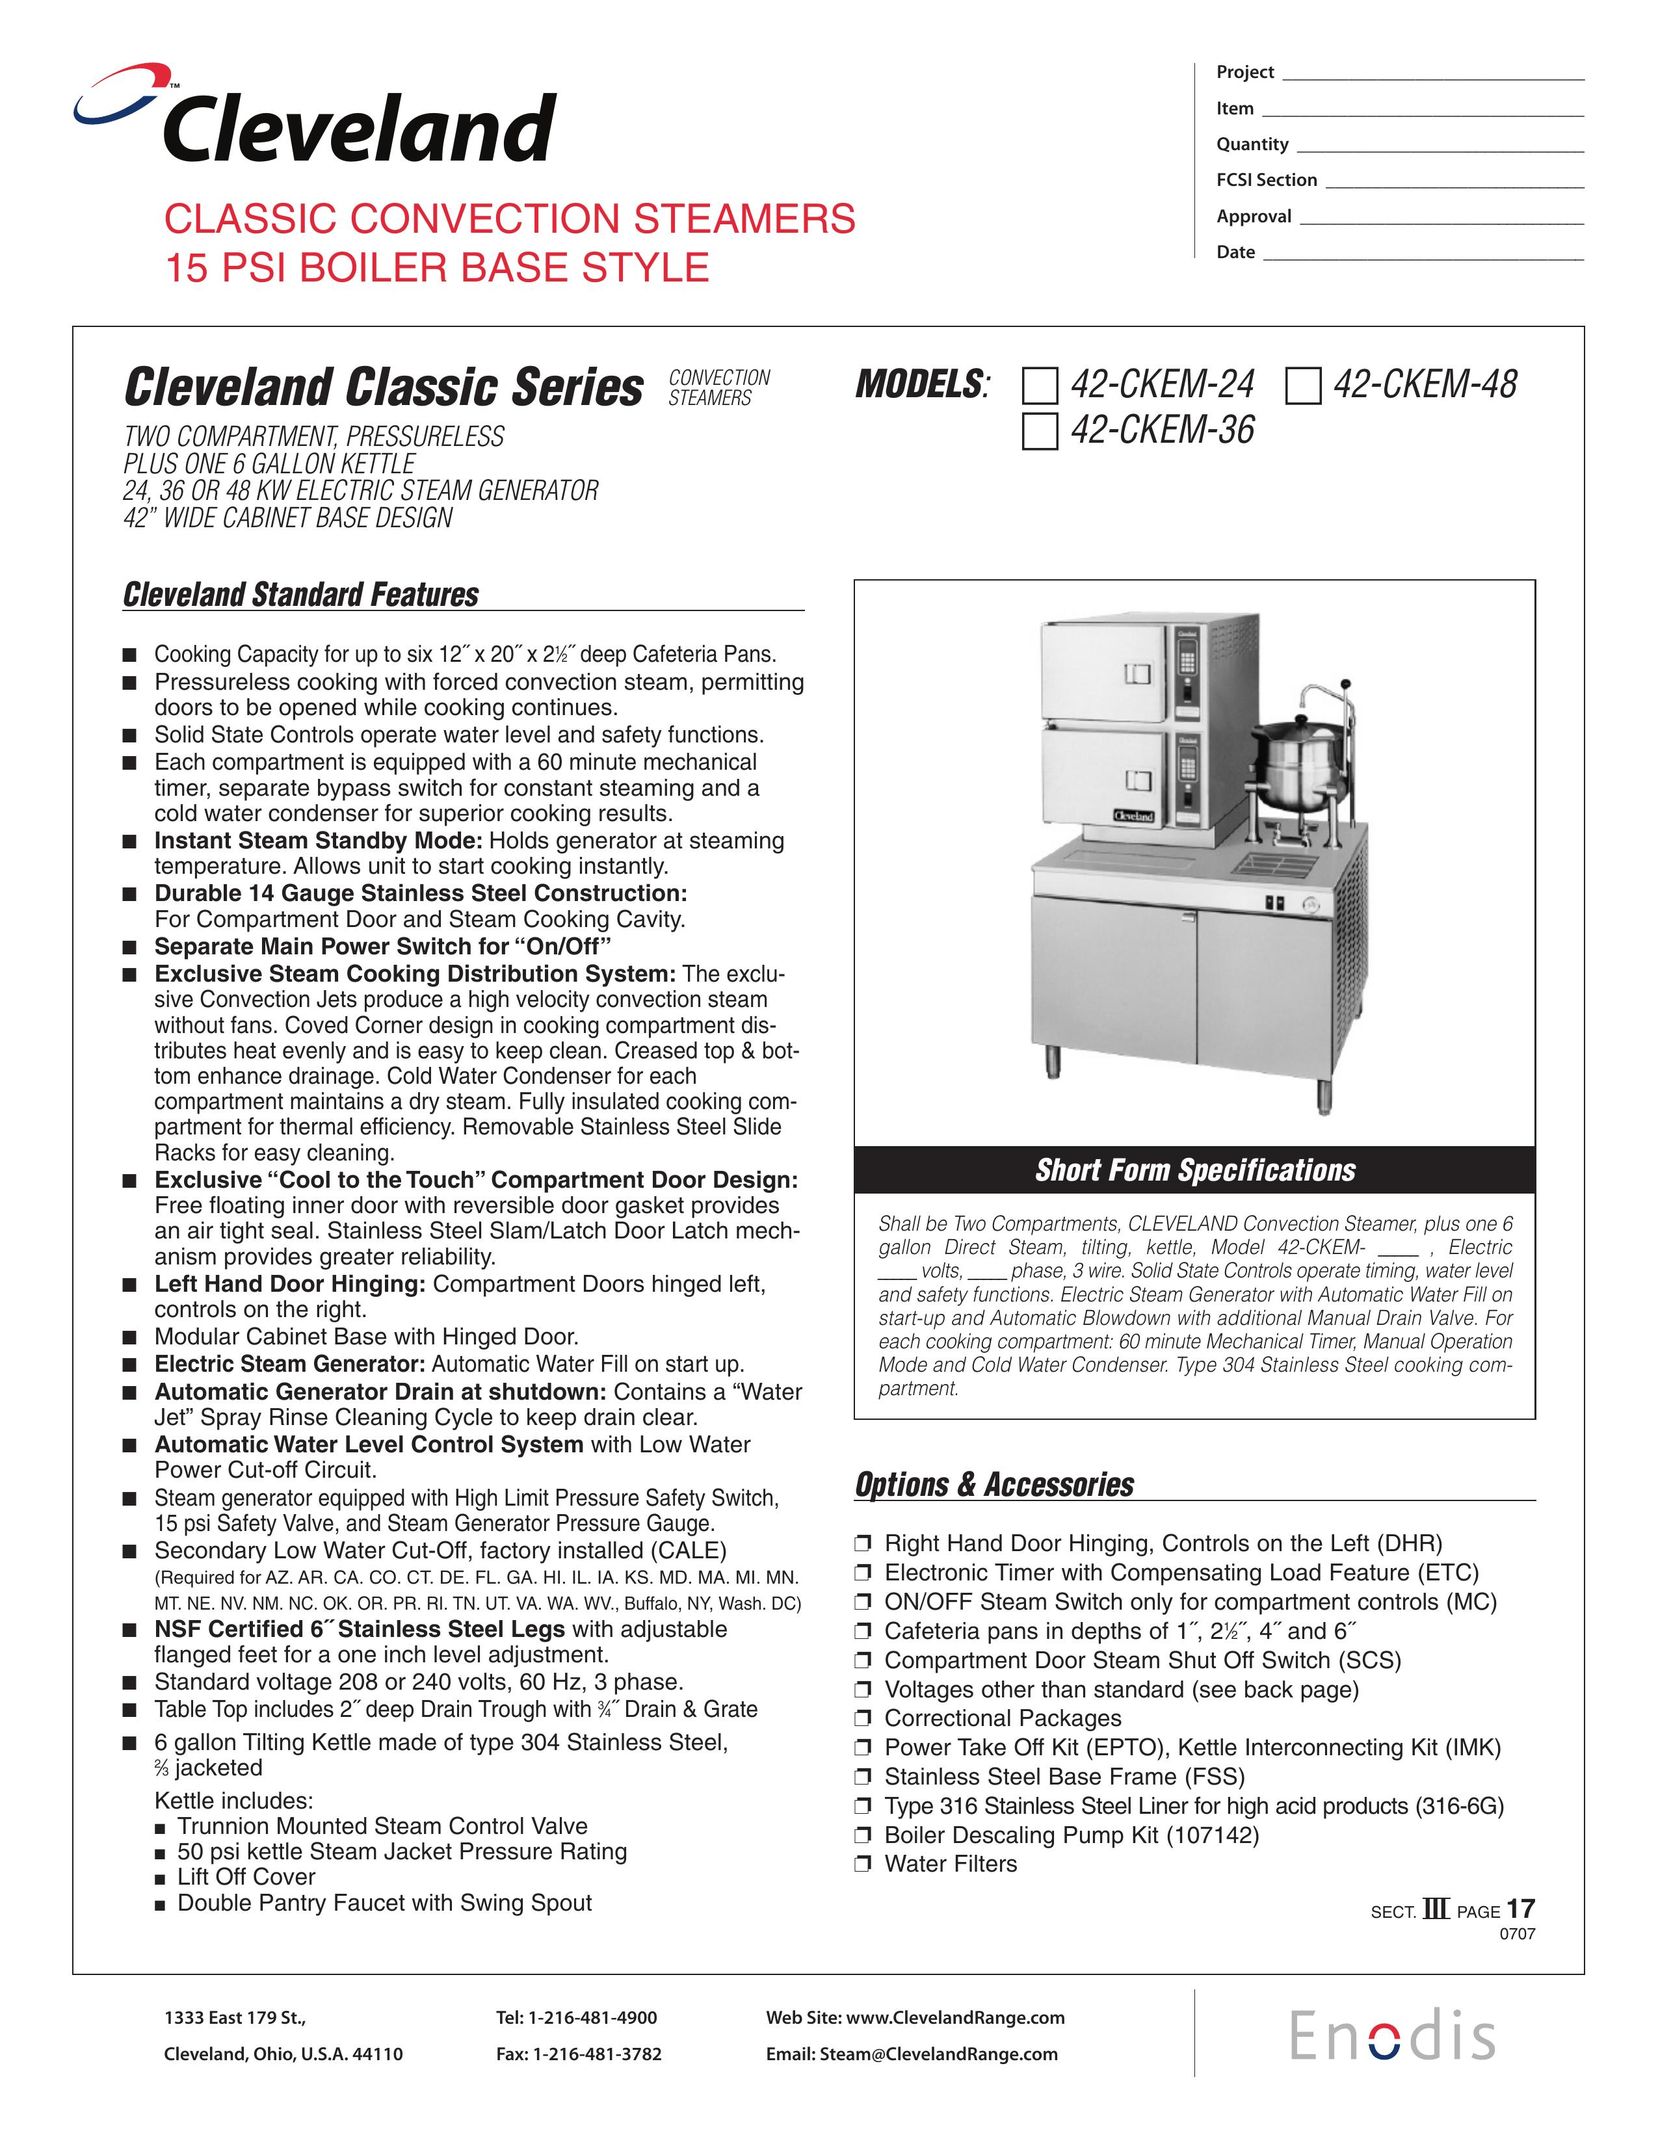 Cleveland Range 42-CKEM-24 Electric Steamer User Manual